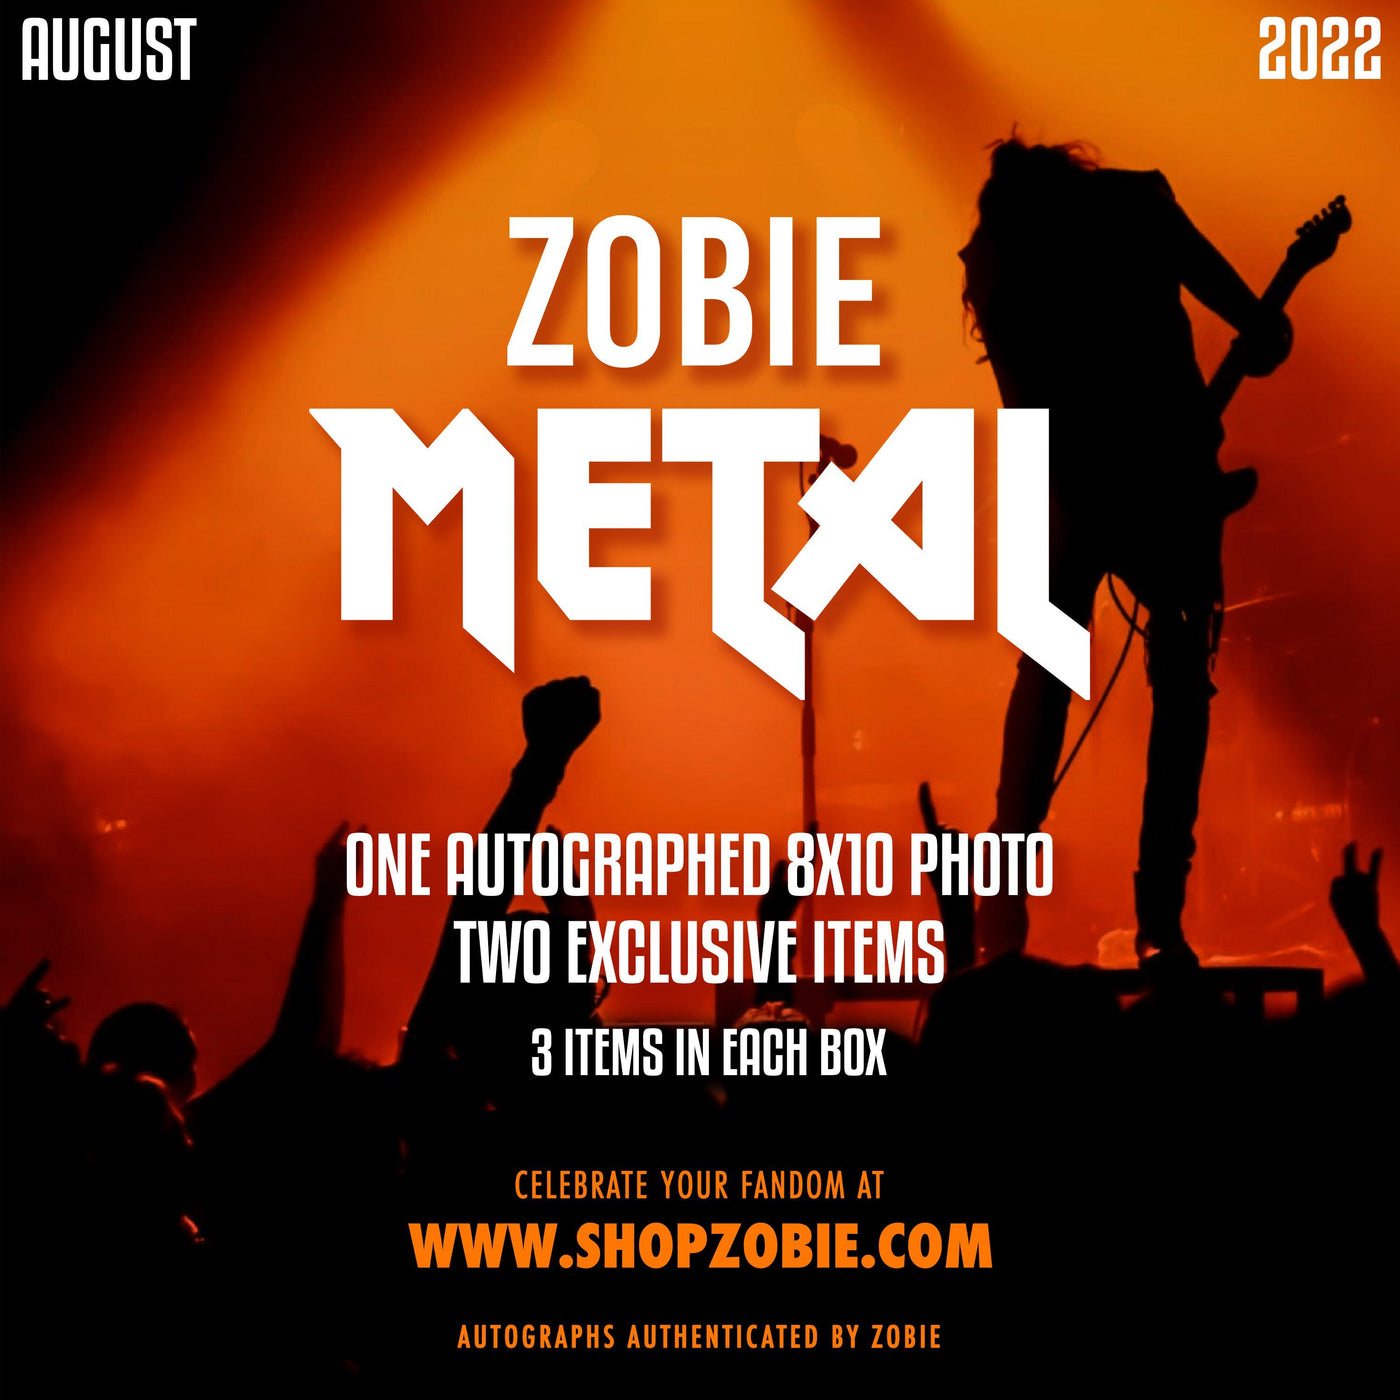 Zobie Metal - August 2022